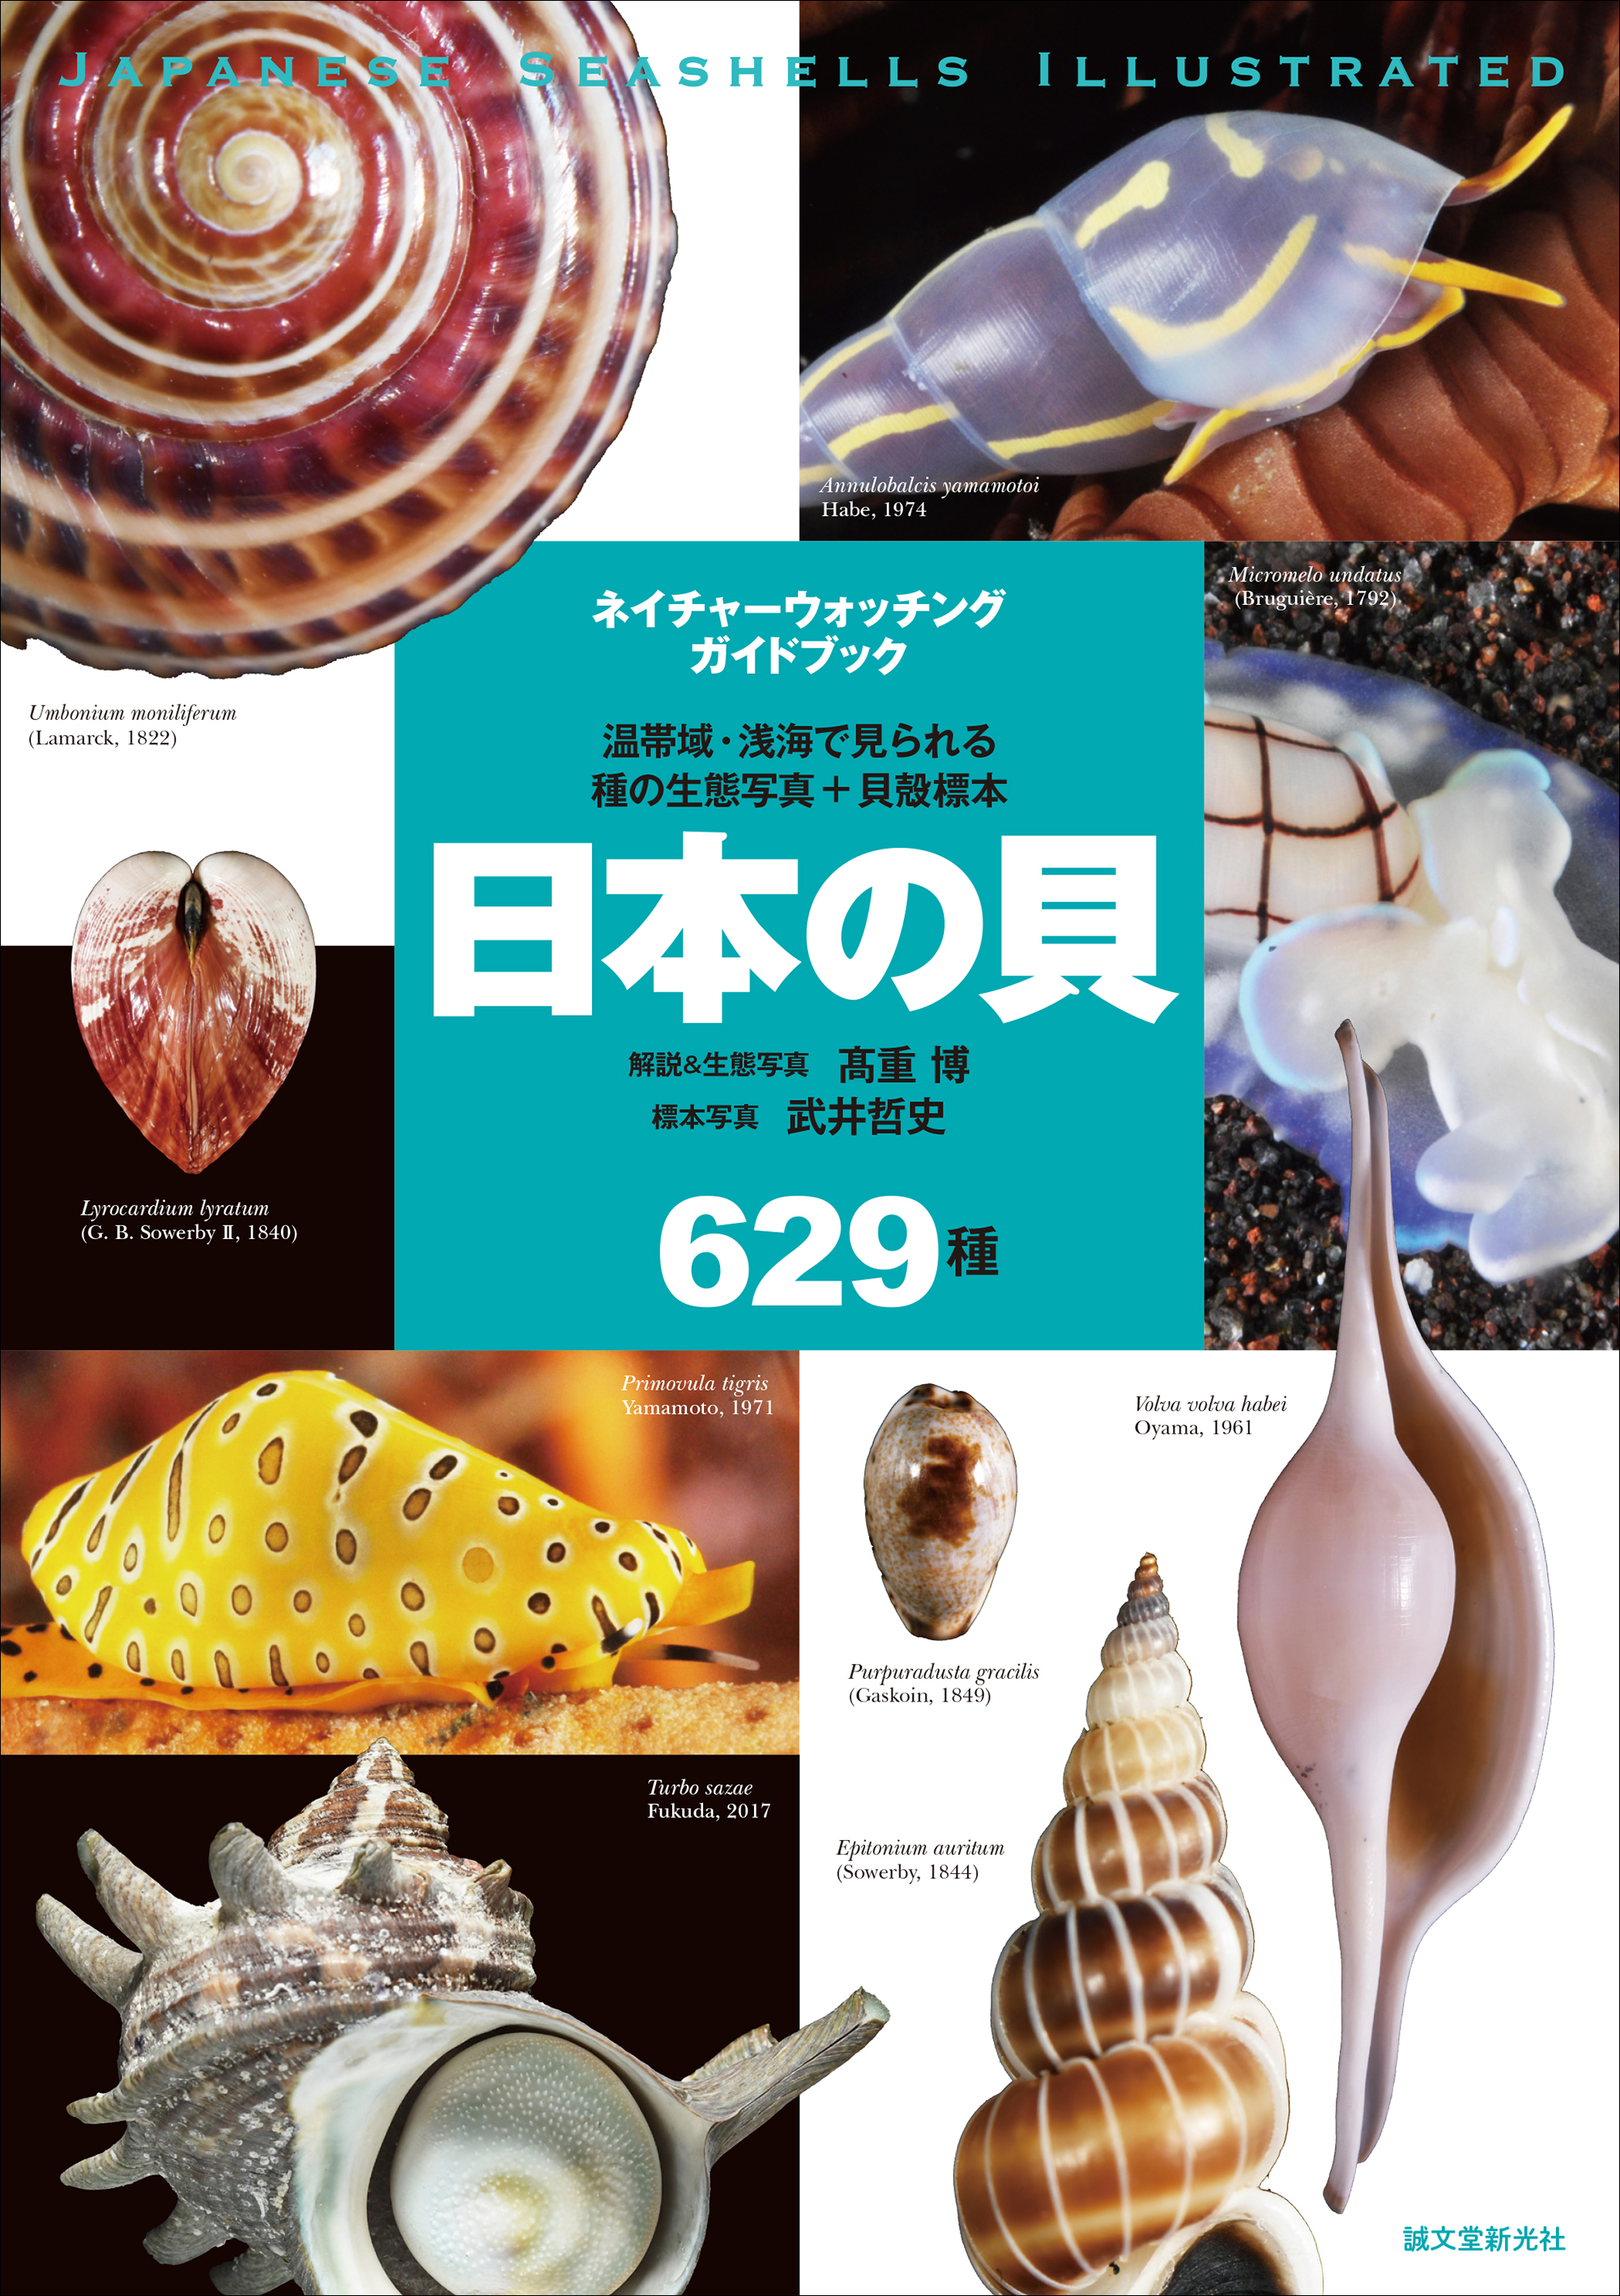 日本の貝の生態写真と標本写真を629種 全て掲載した画期的な図鑑 普段見られない目 触覚等の写真は種類 同定にも役立ちます 株式会社誠文堂新光社のプレスリリース